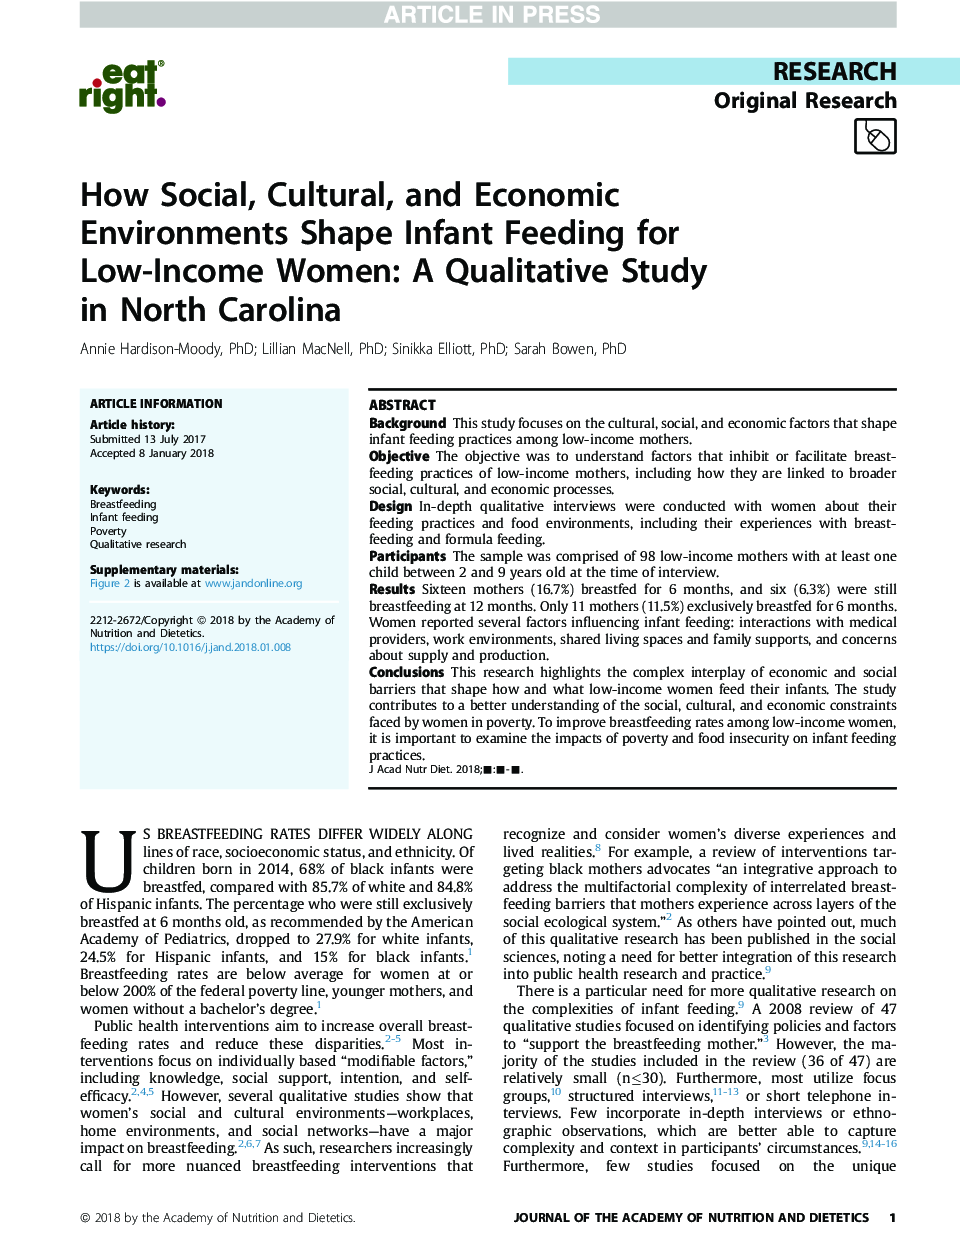 چگونه محیط های اجتماعی، فرهنگی و اقتصادی تغذیه نوزادان را برای زنان با درآمد پایین شکل می دهند: یک مطالعه کیفی در کارولینای شمالی